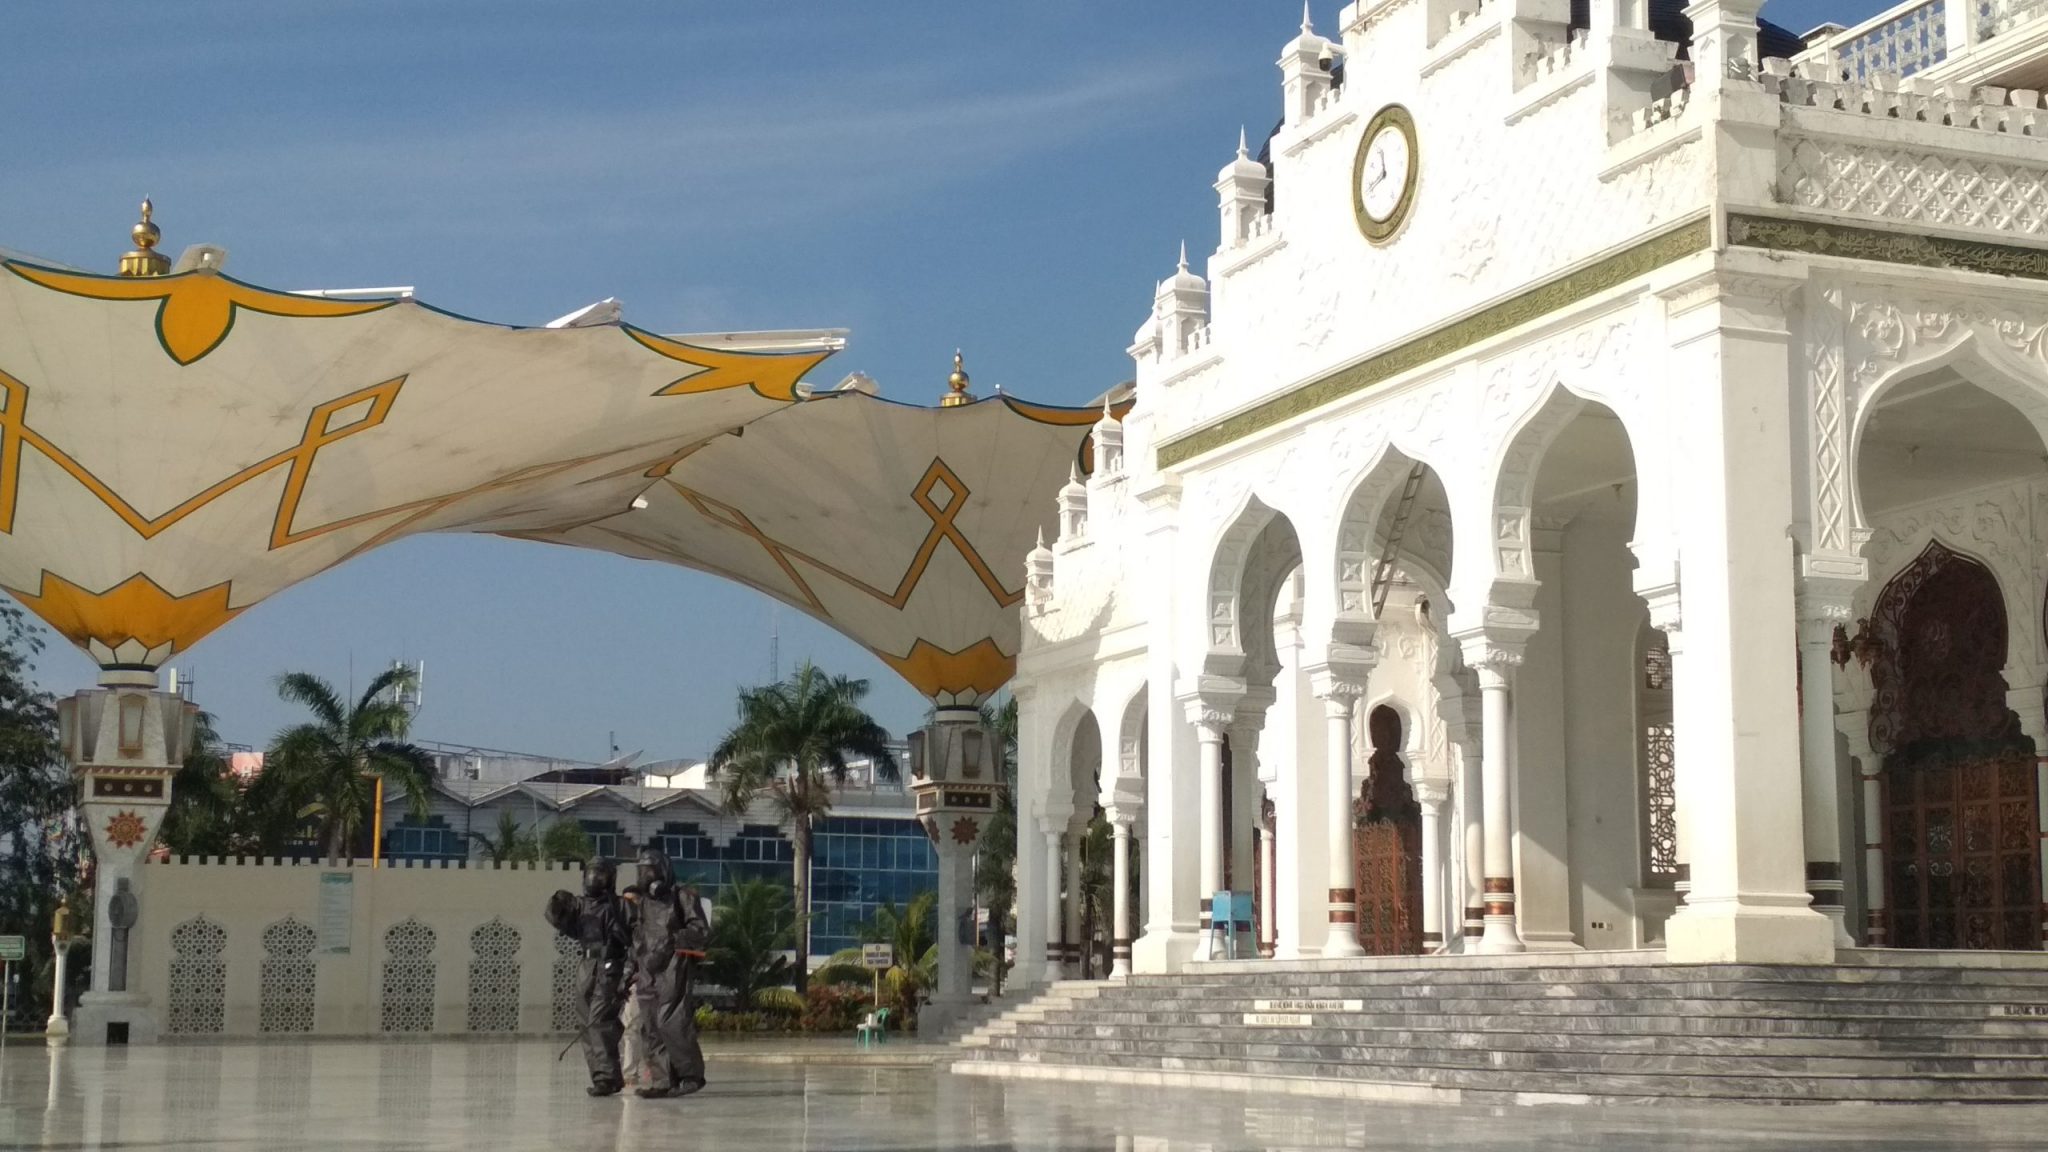 Cegah Corona, Masjid Raya Baiturrahman Disemprot Disinfektan Sebelum Salat Jumat